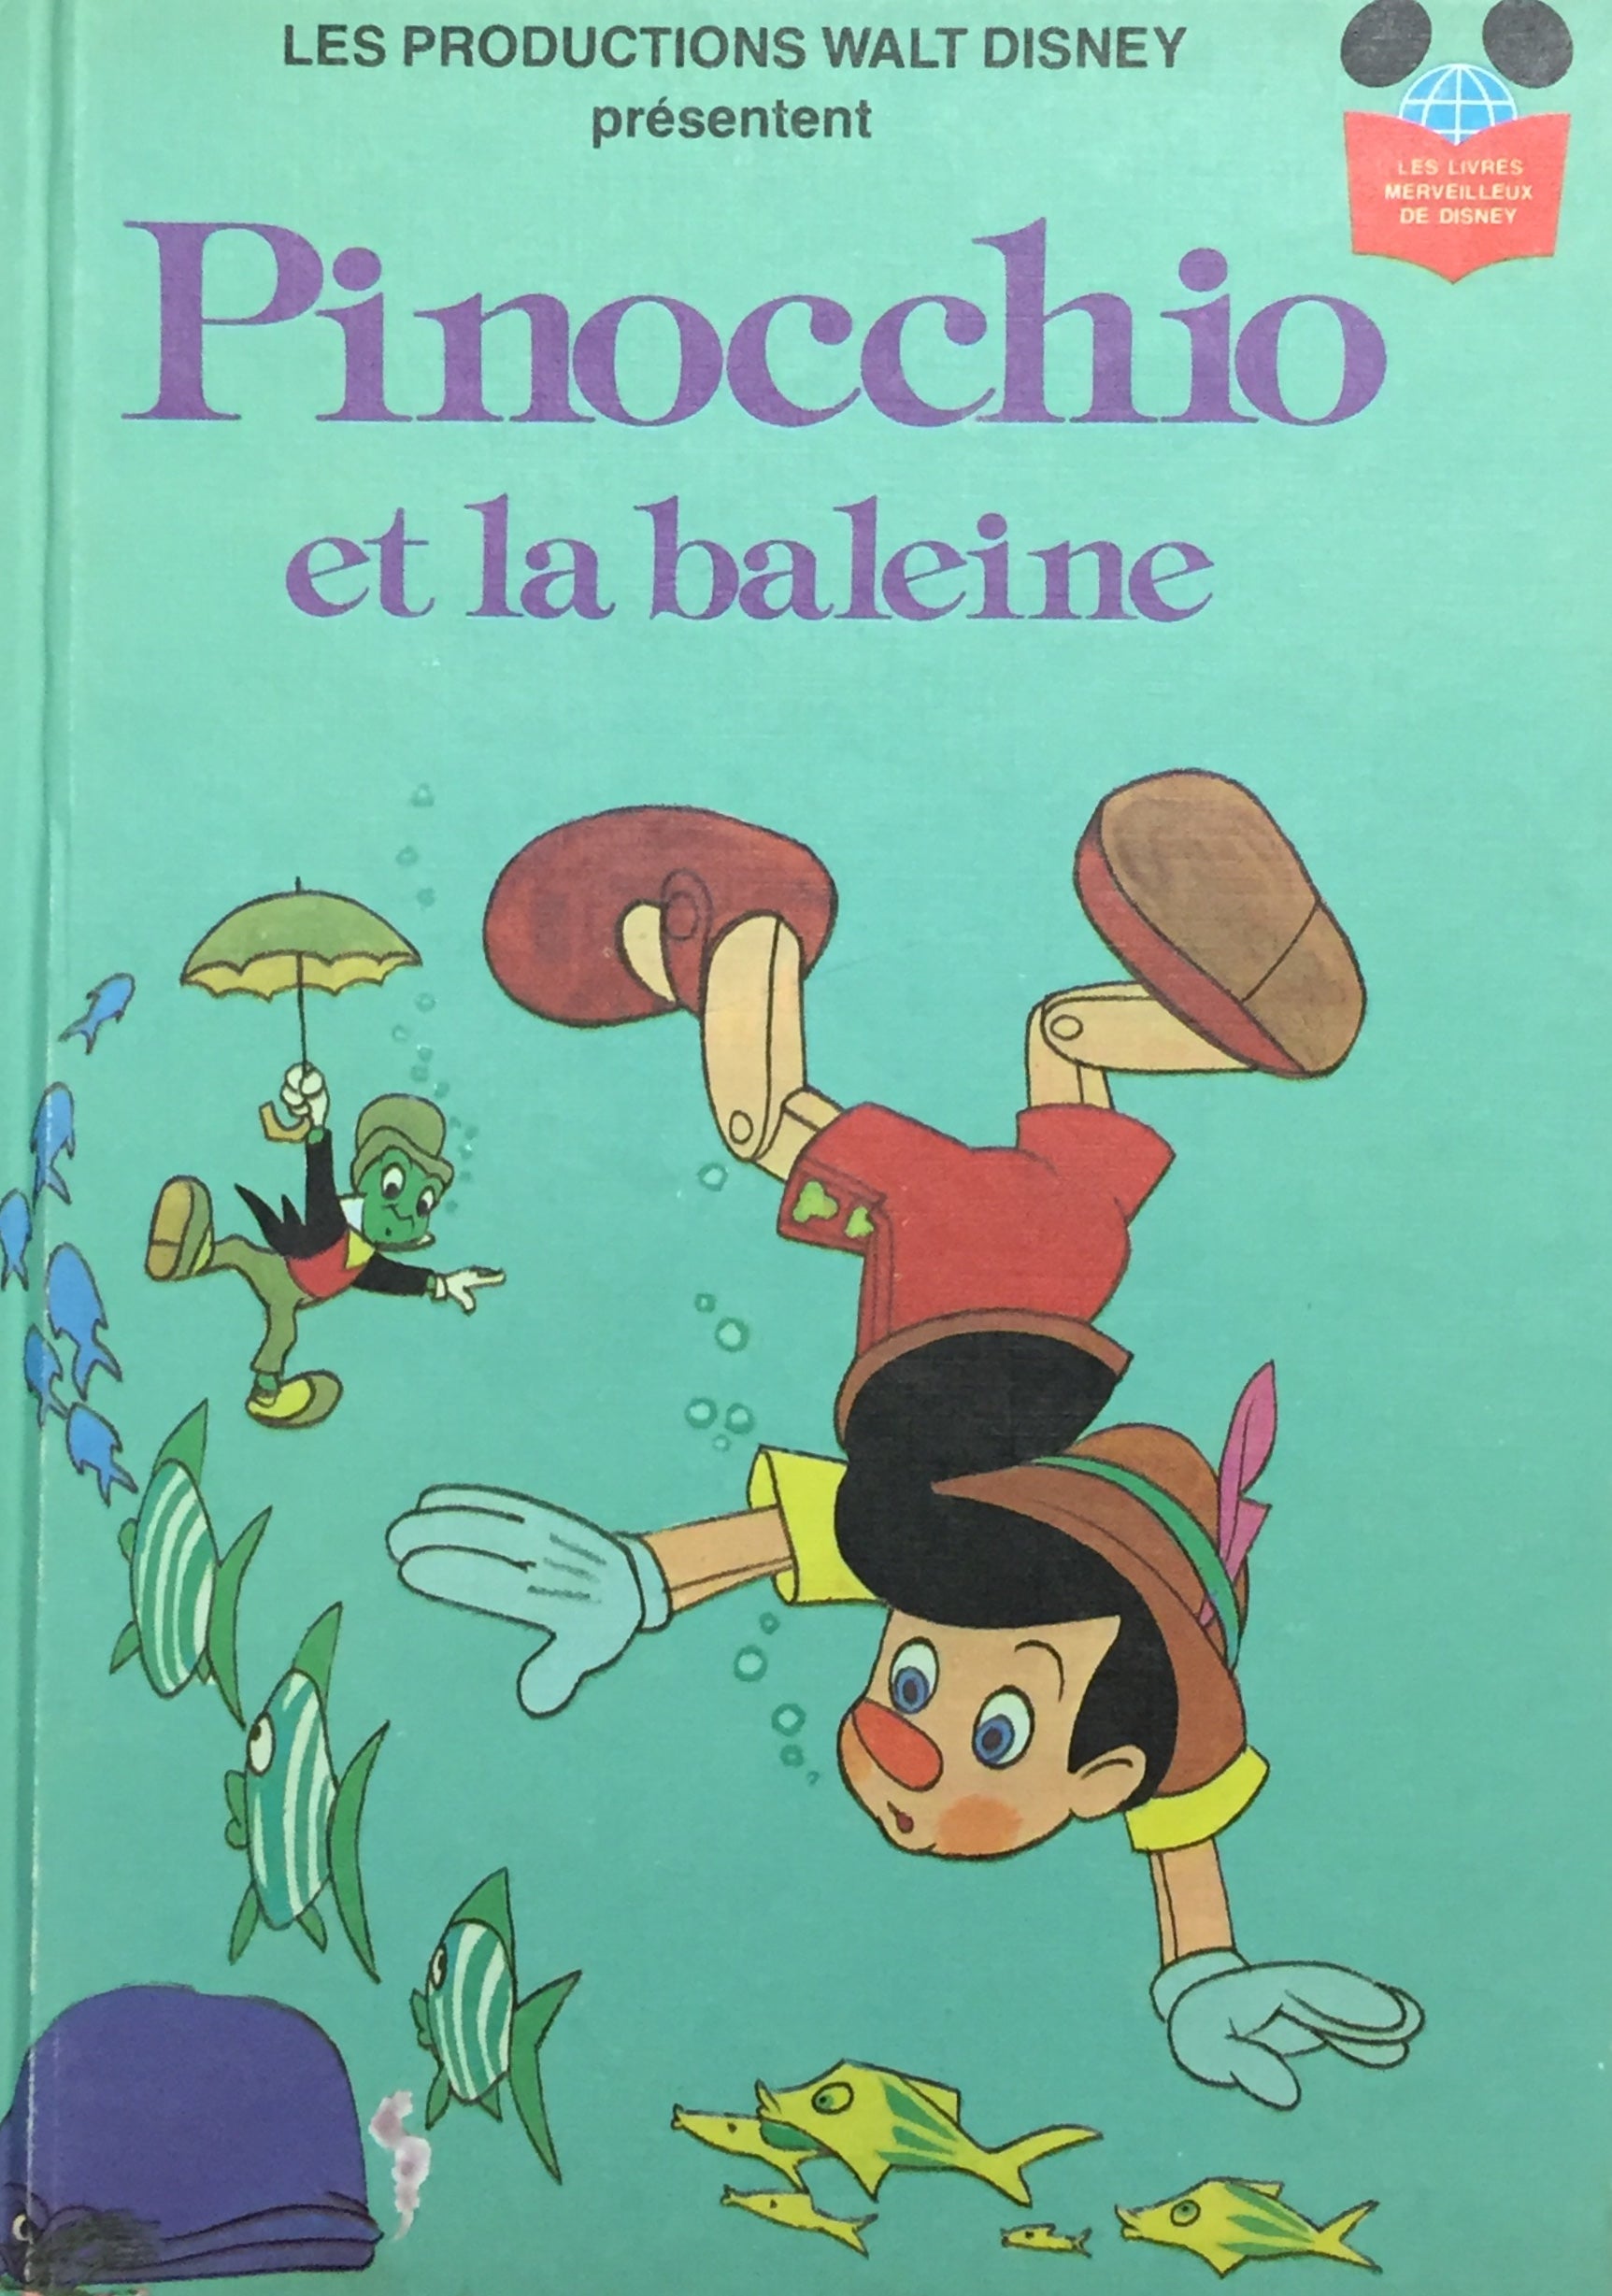 Les livres merveilleux de Disney : Pinocchio et la baleine